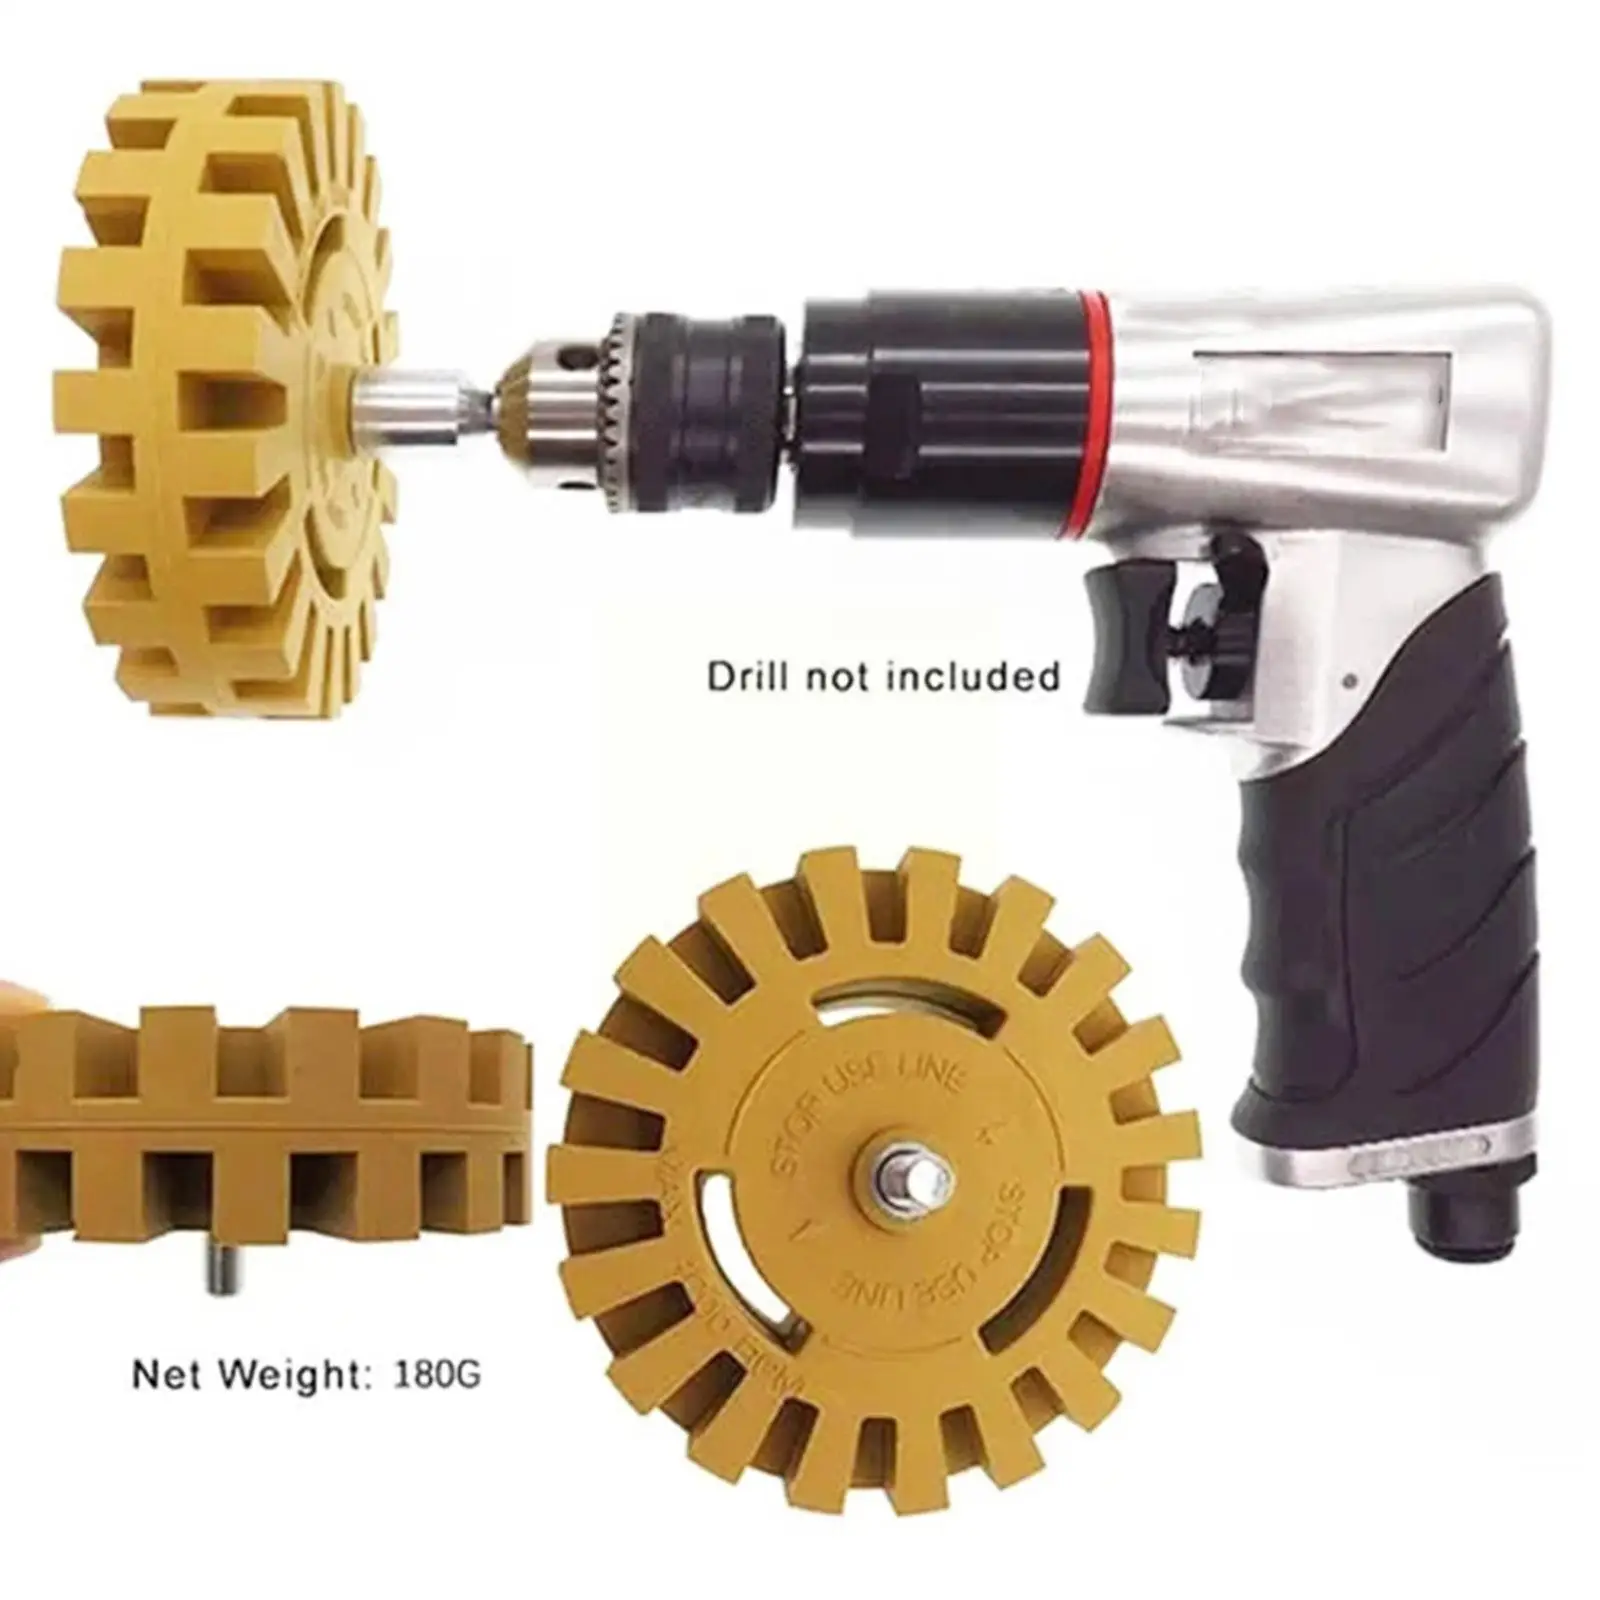 4-дюймовое универсальное резиновое колесо-ластик для удаления автомобильного клея клейкая наклейка авто ремонт краски инструмент резиновый ластик колесо D9S6 - 4